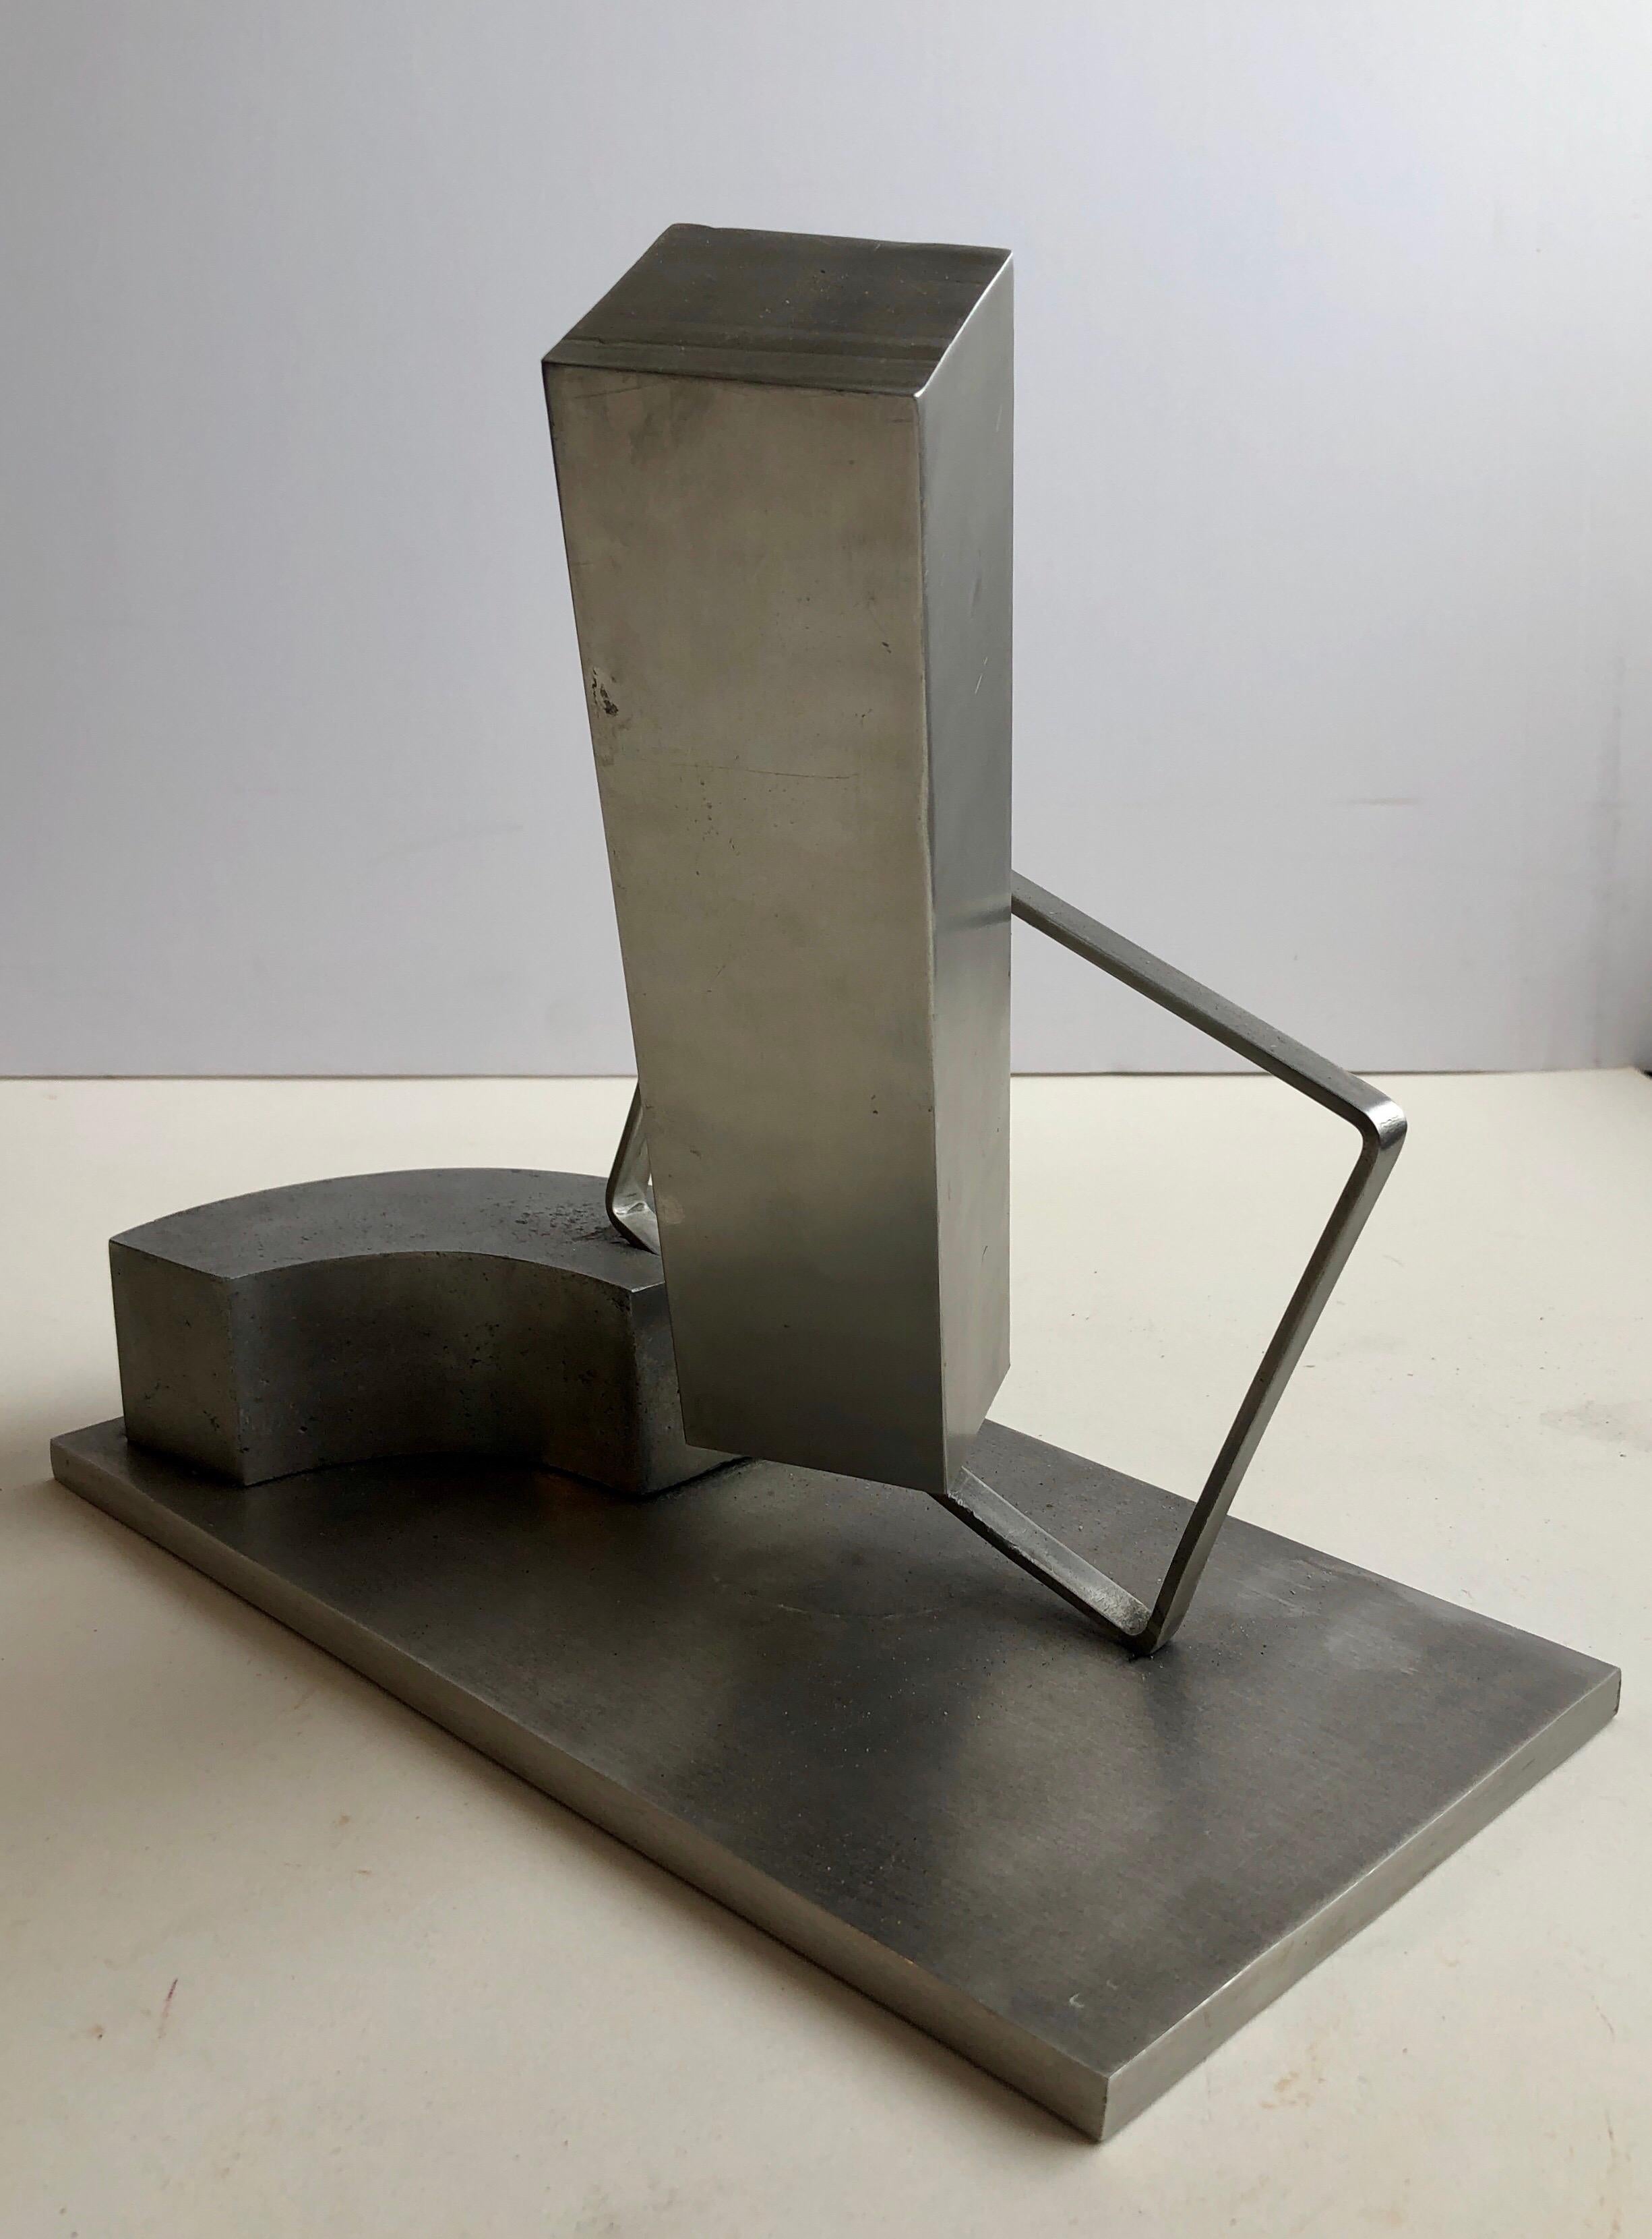 1969 Israeli Abstract Sculpture Stainless Steel Menashe Kadishman Suspension 4